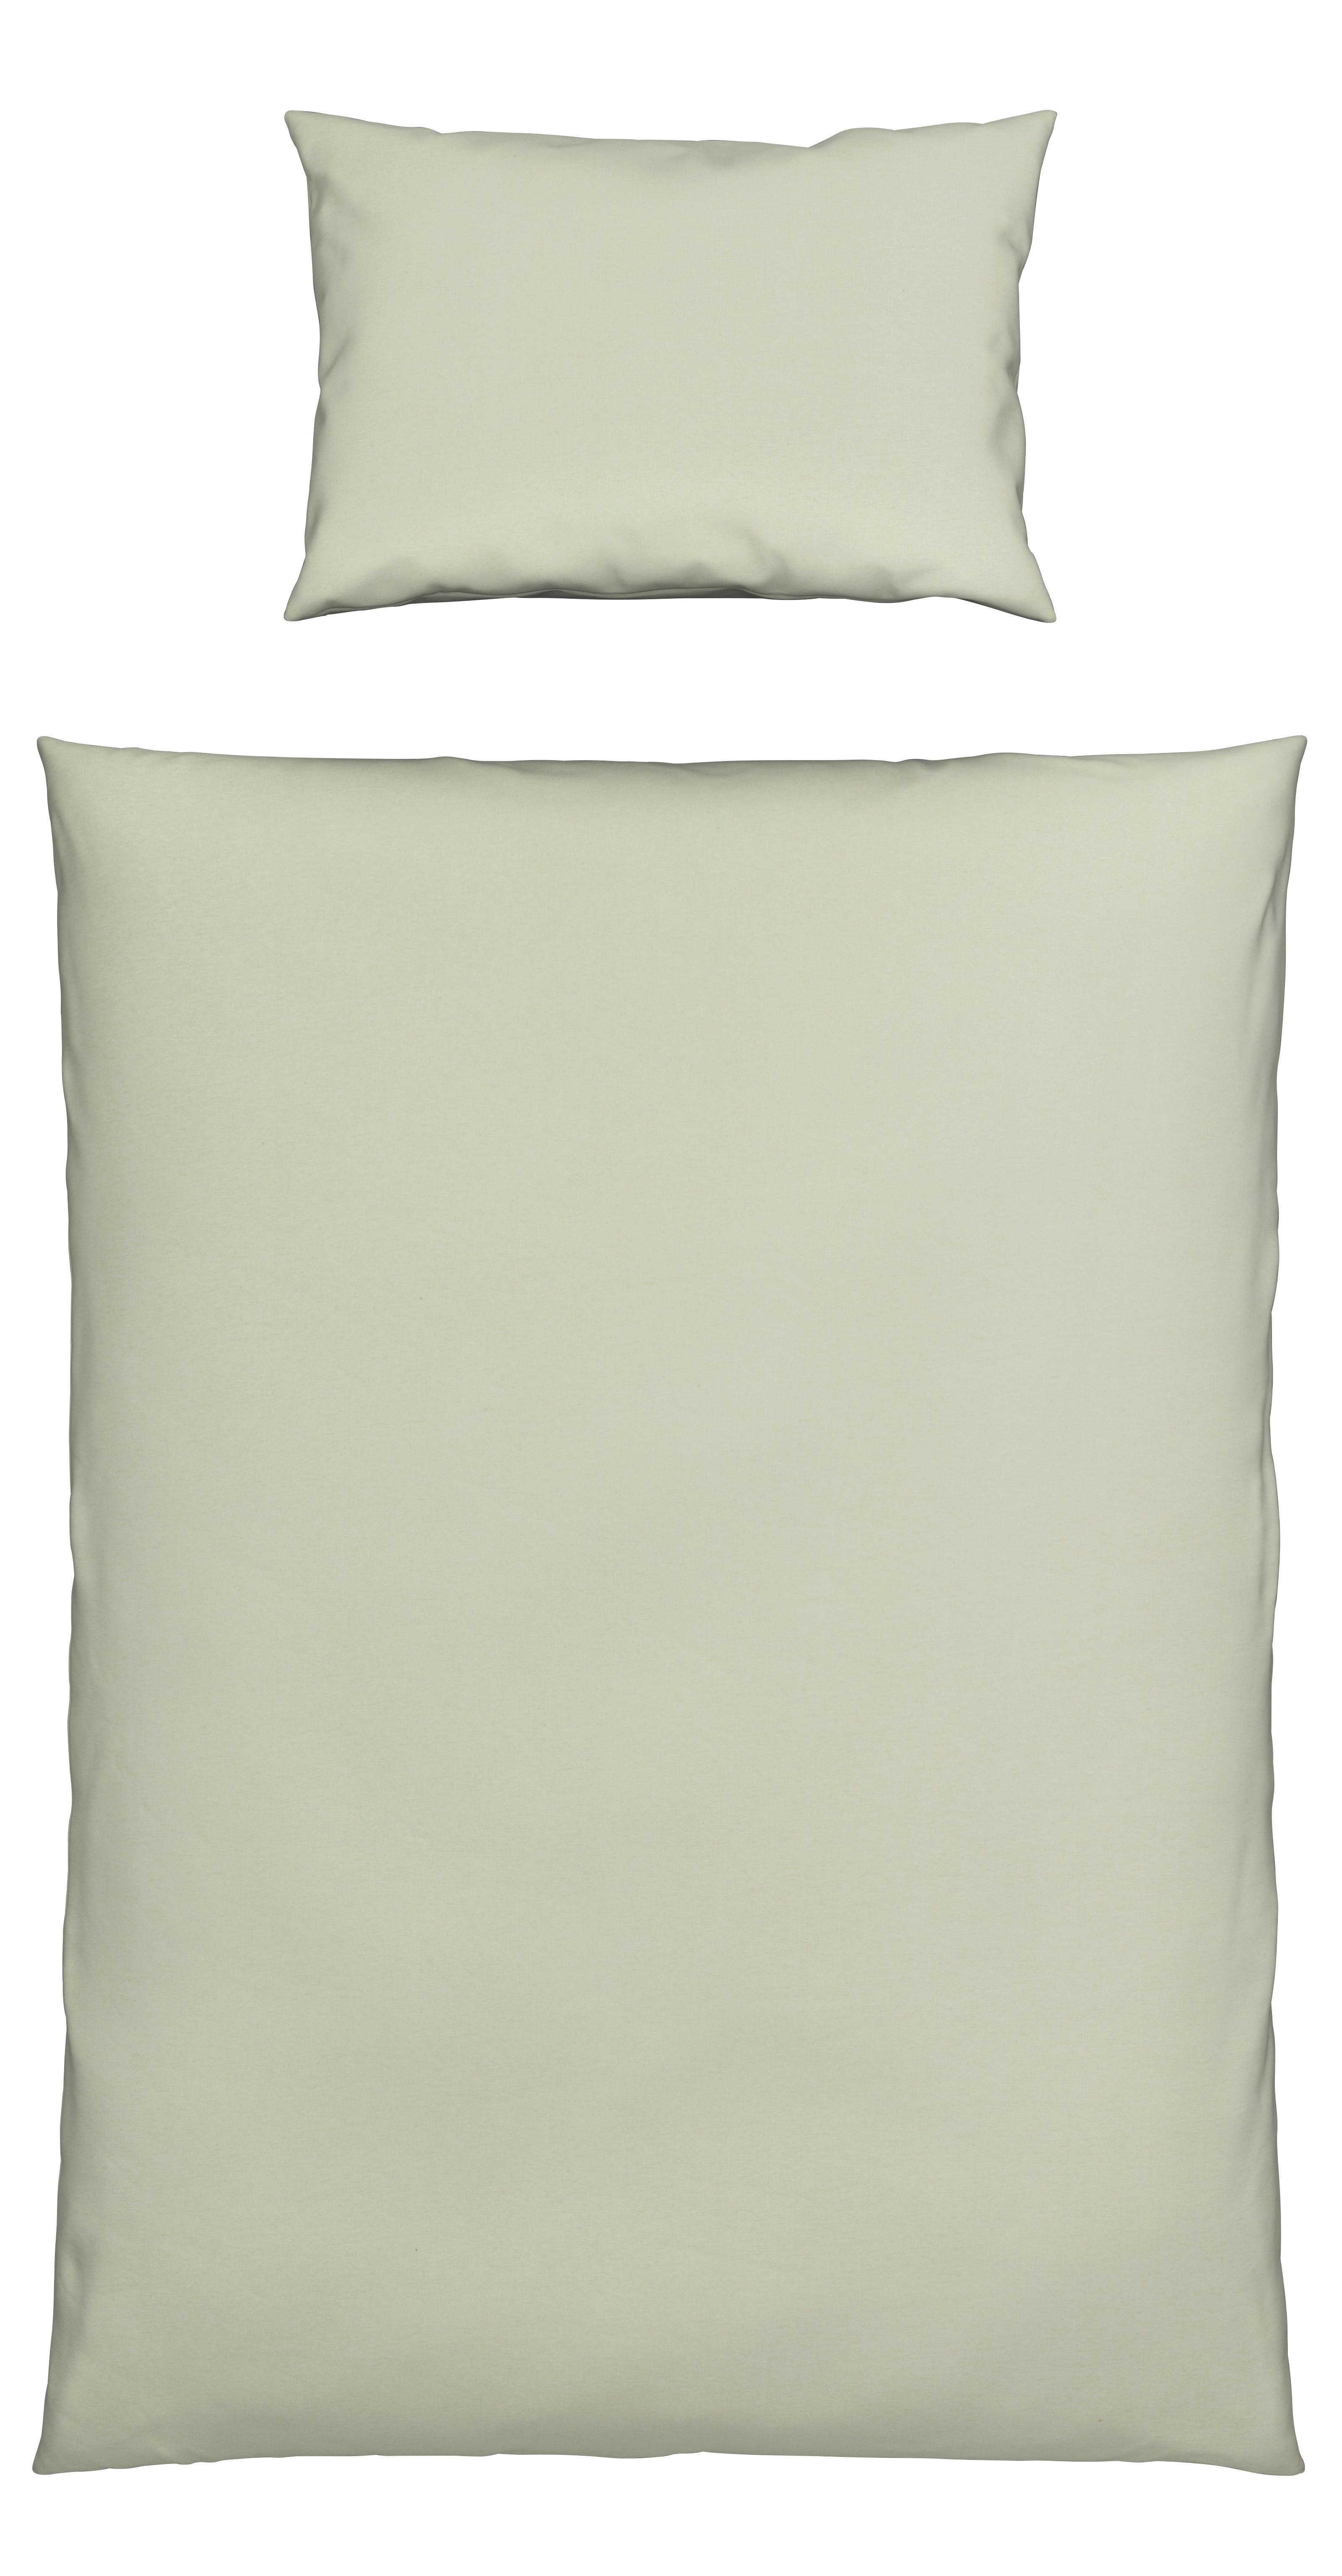 Dětské Povlečení Toni, 100/135cm, Světle Zelená - světle zelená, Moderní, textil (100/135cm) - Modern Living